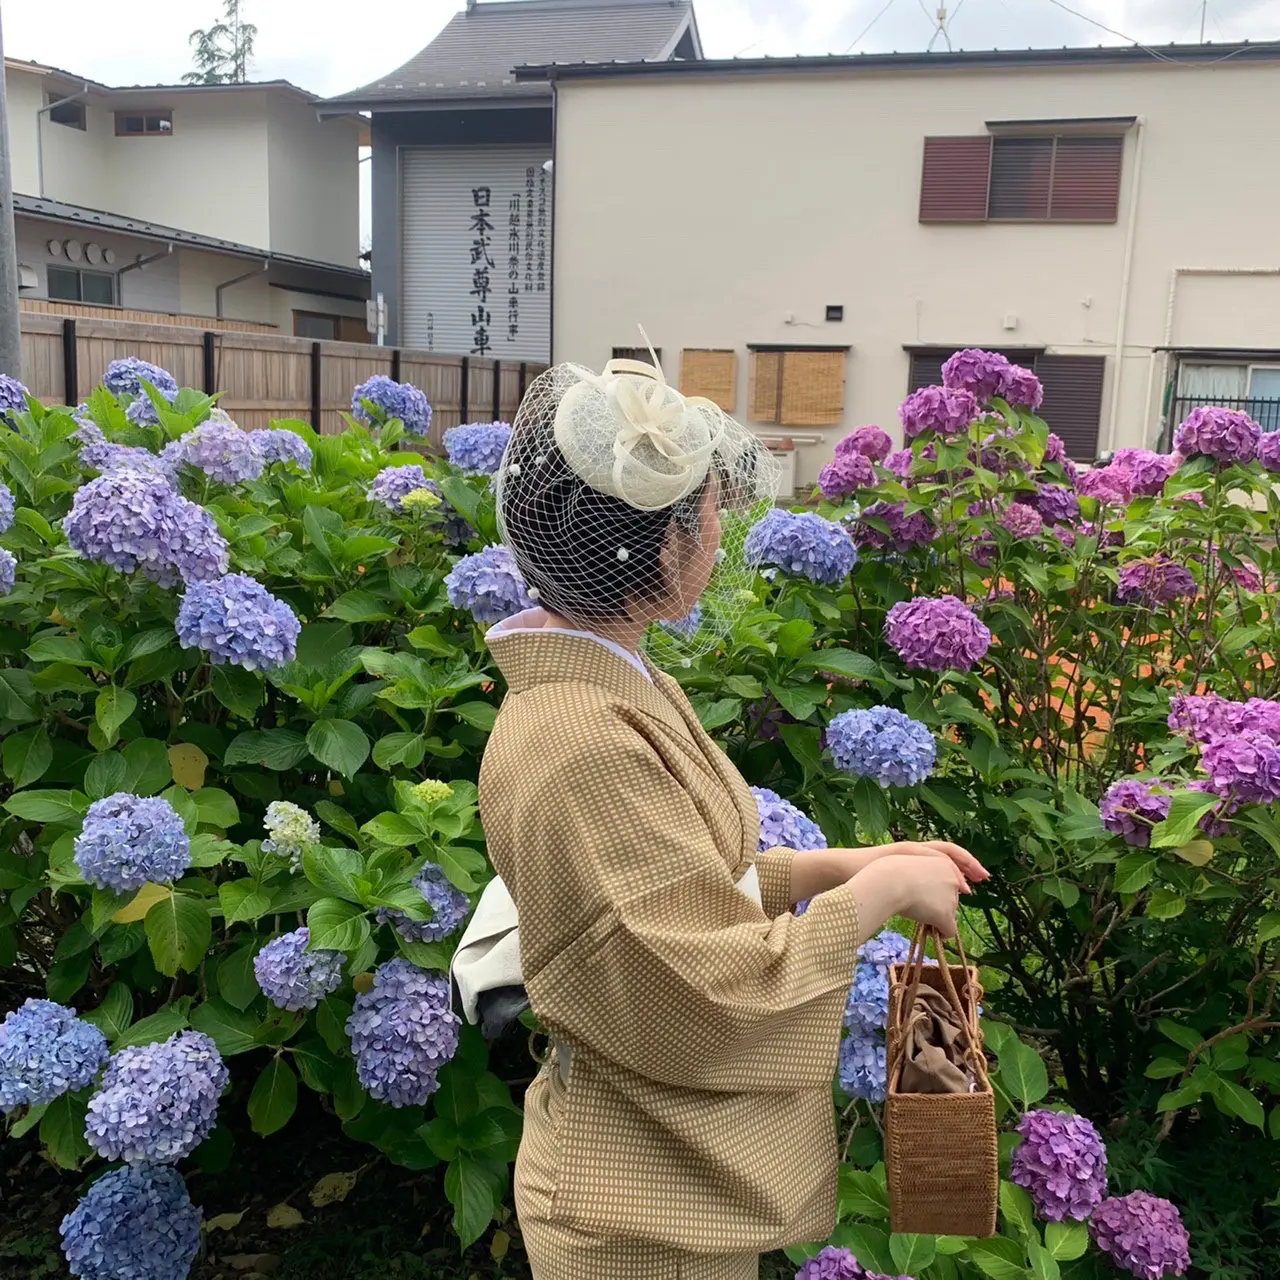 Summer Kimono by Rika Kimono